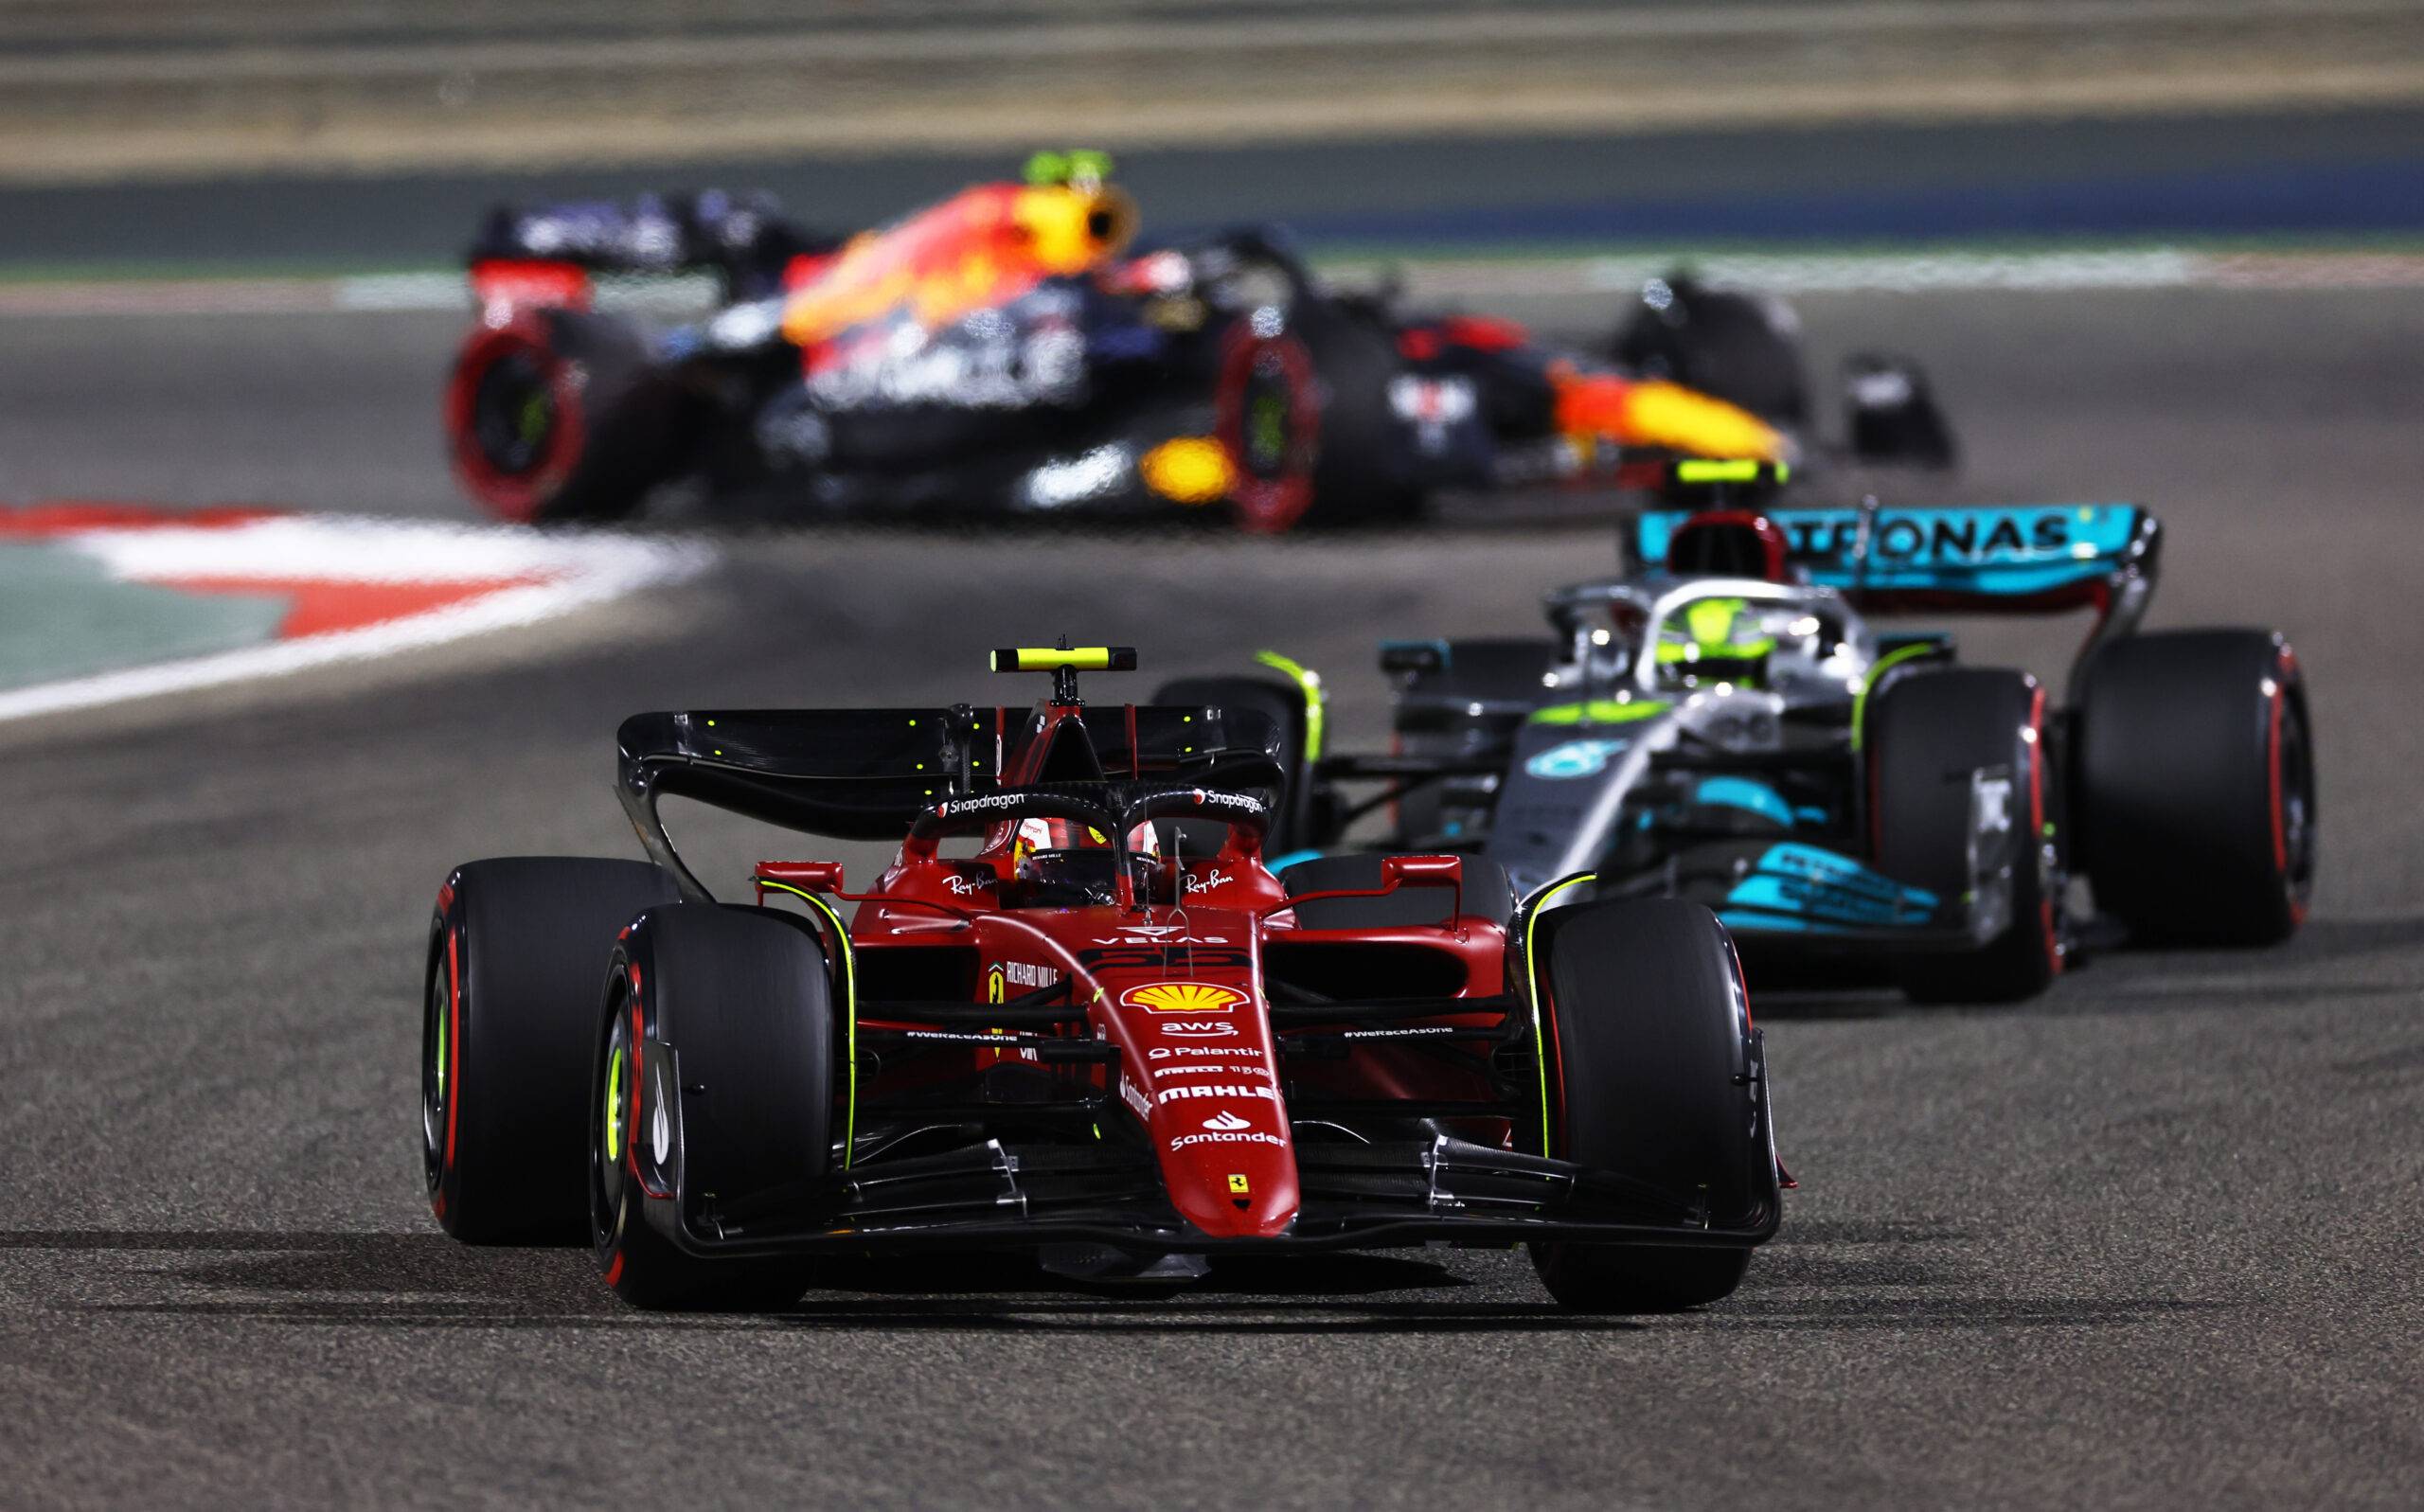 Carlos Sainz ahead of Lewis Hamilton in Bahrain